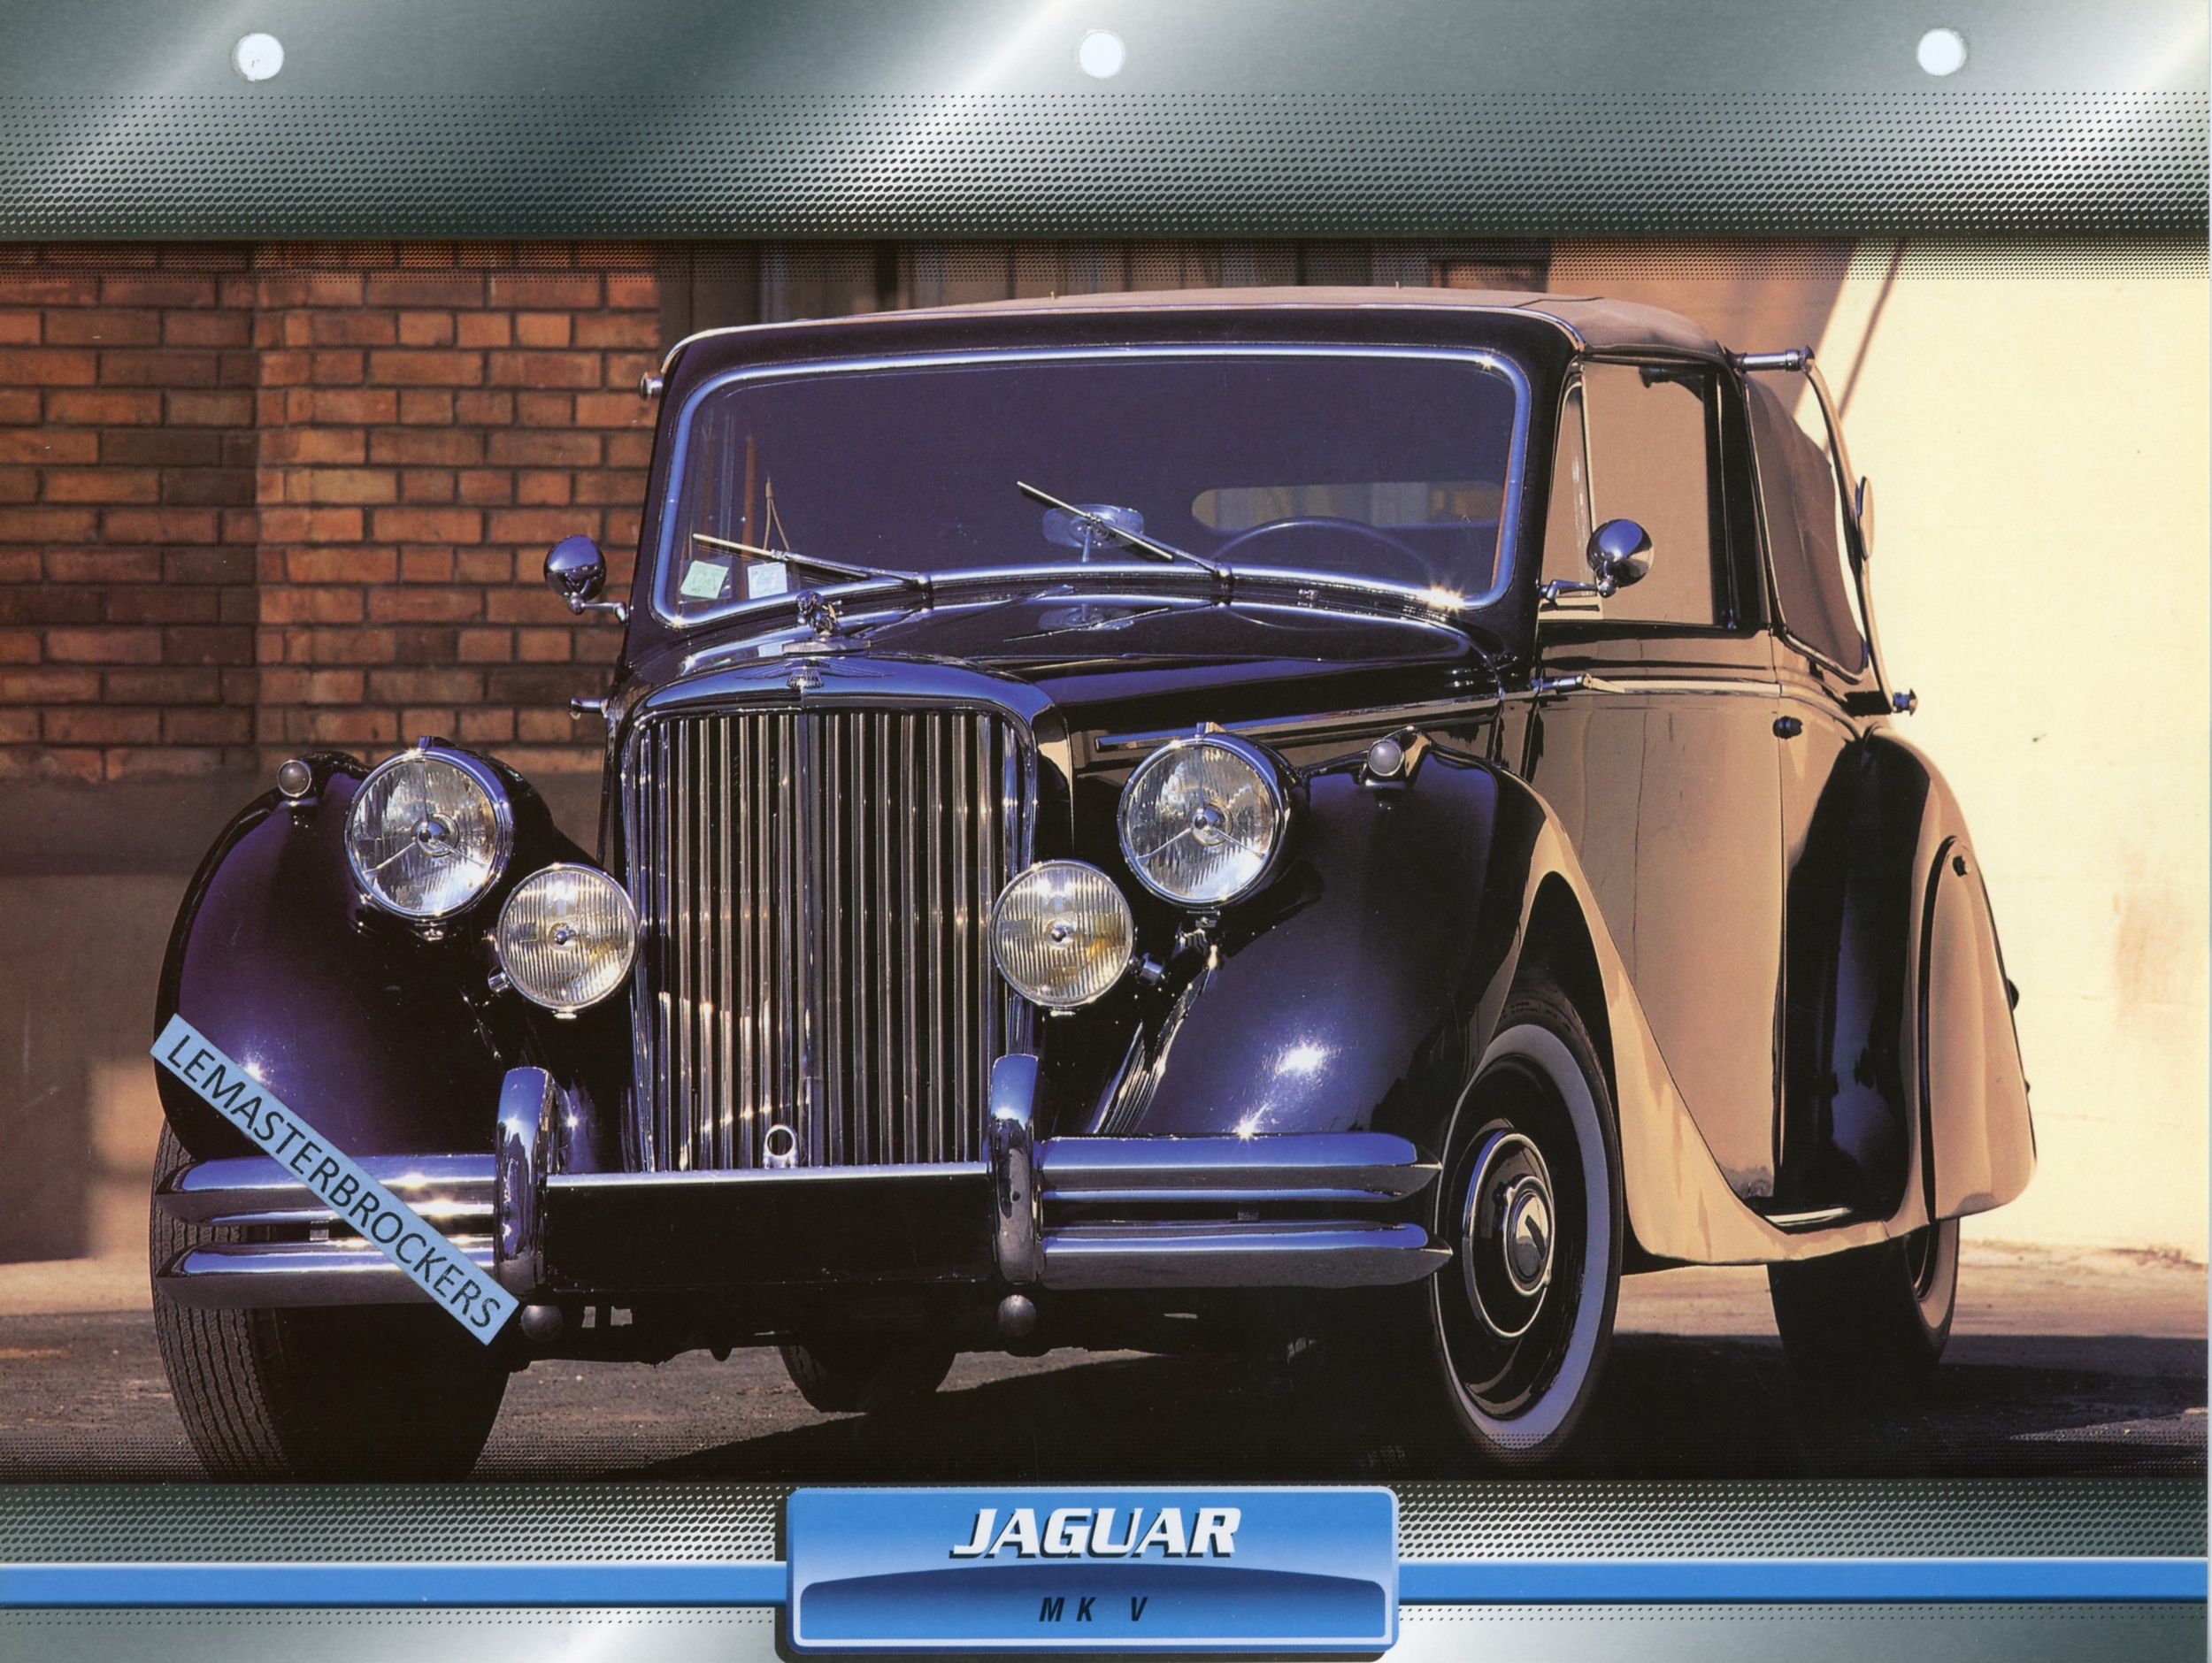 JAGUAR MK V 1948 - FICHE AUTO ATLAS LITTÉRATURE AUTOMOBILE CARACTÉRISTIQUES TECHNIQUES-LEMASTERBROCKERS